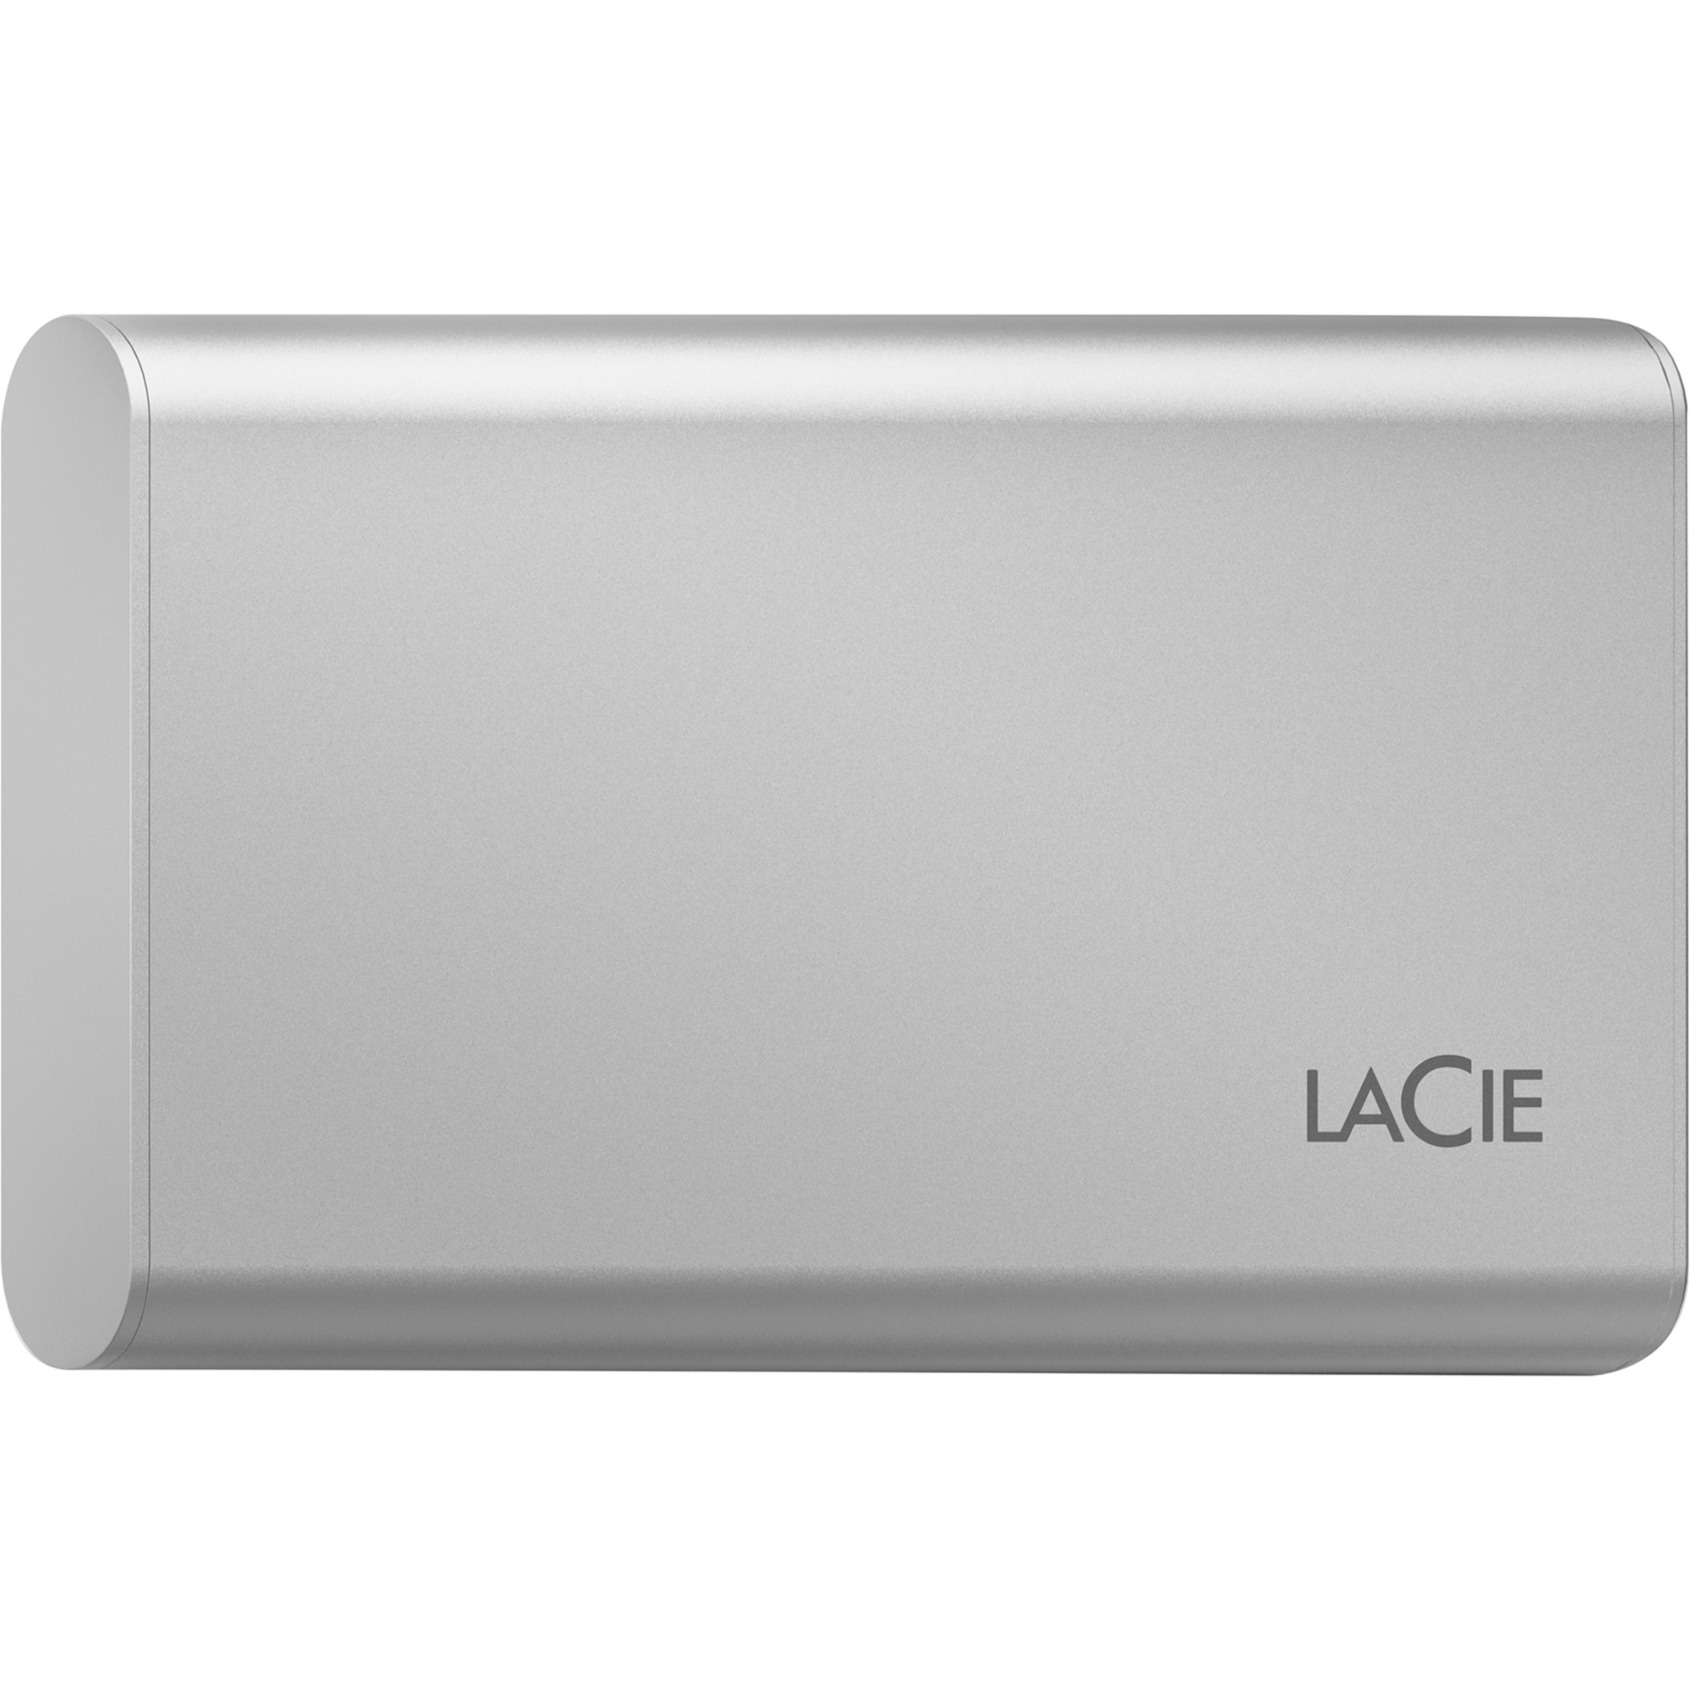 Portable SSD 2 TB von Lacie